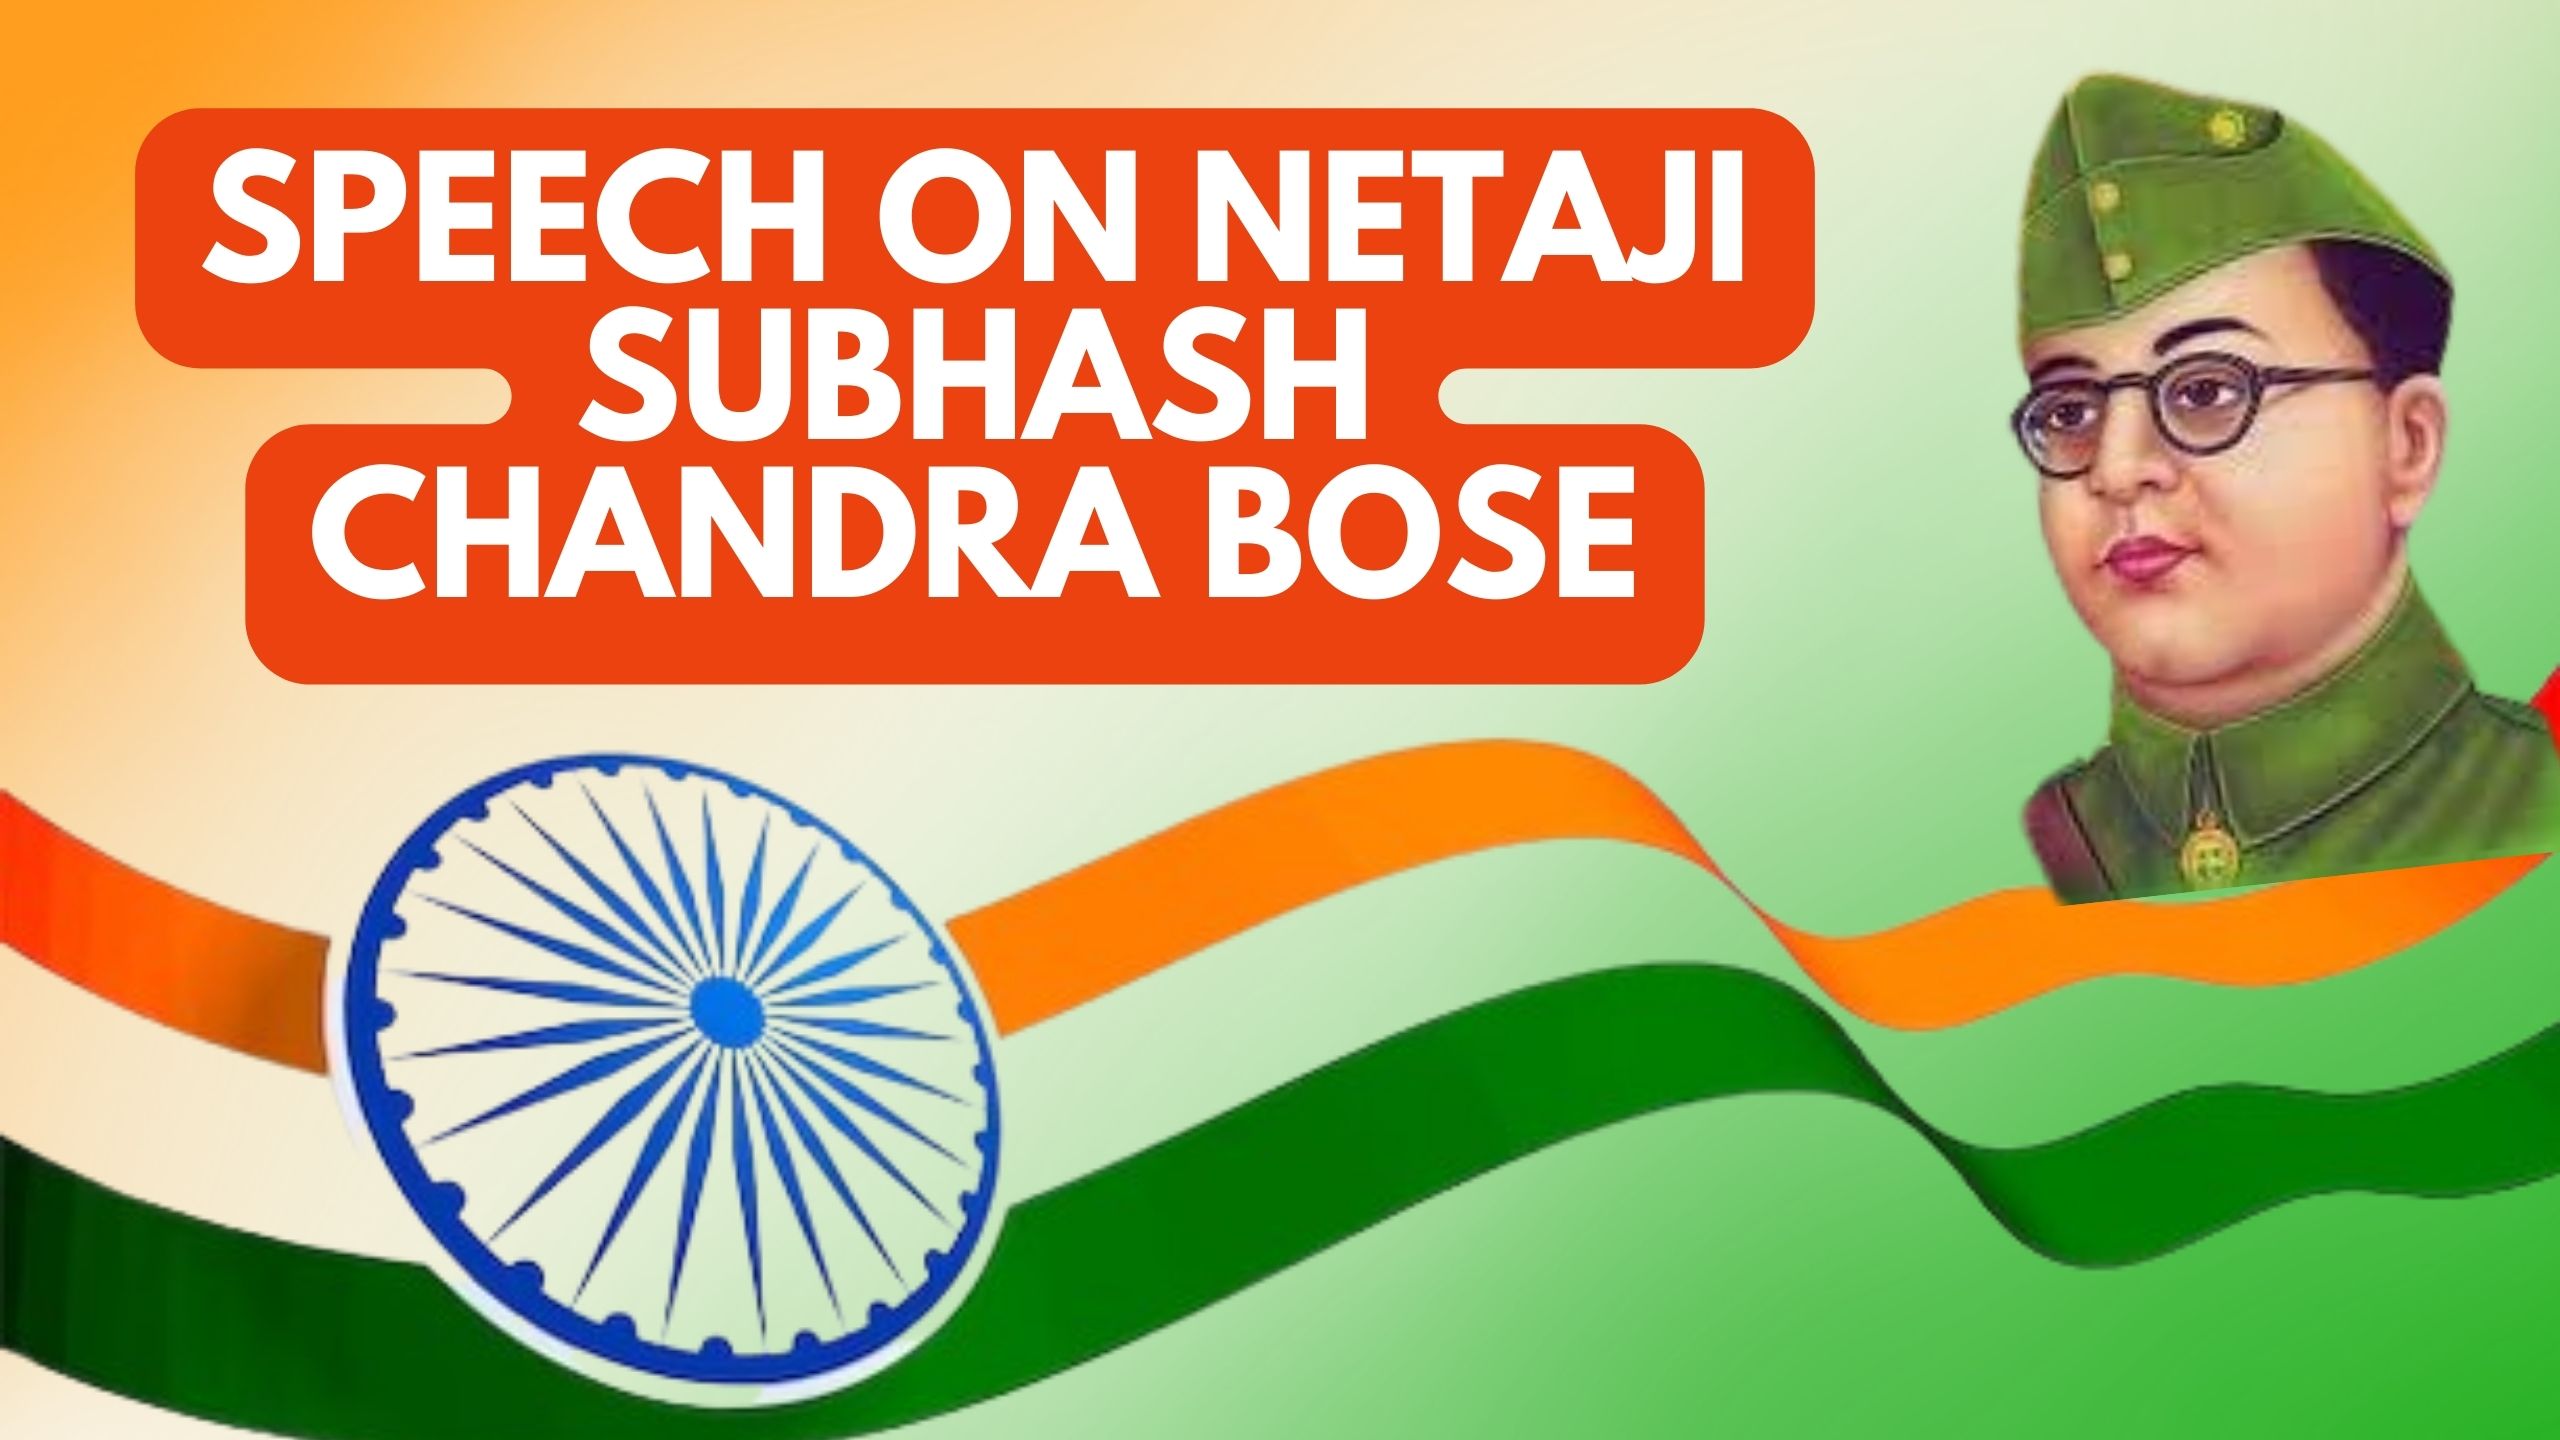 Speech on Netaji Subhash Chandra Bose